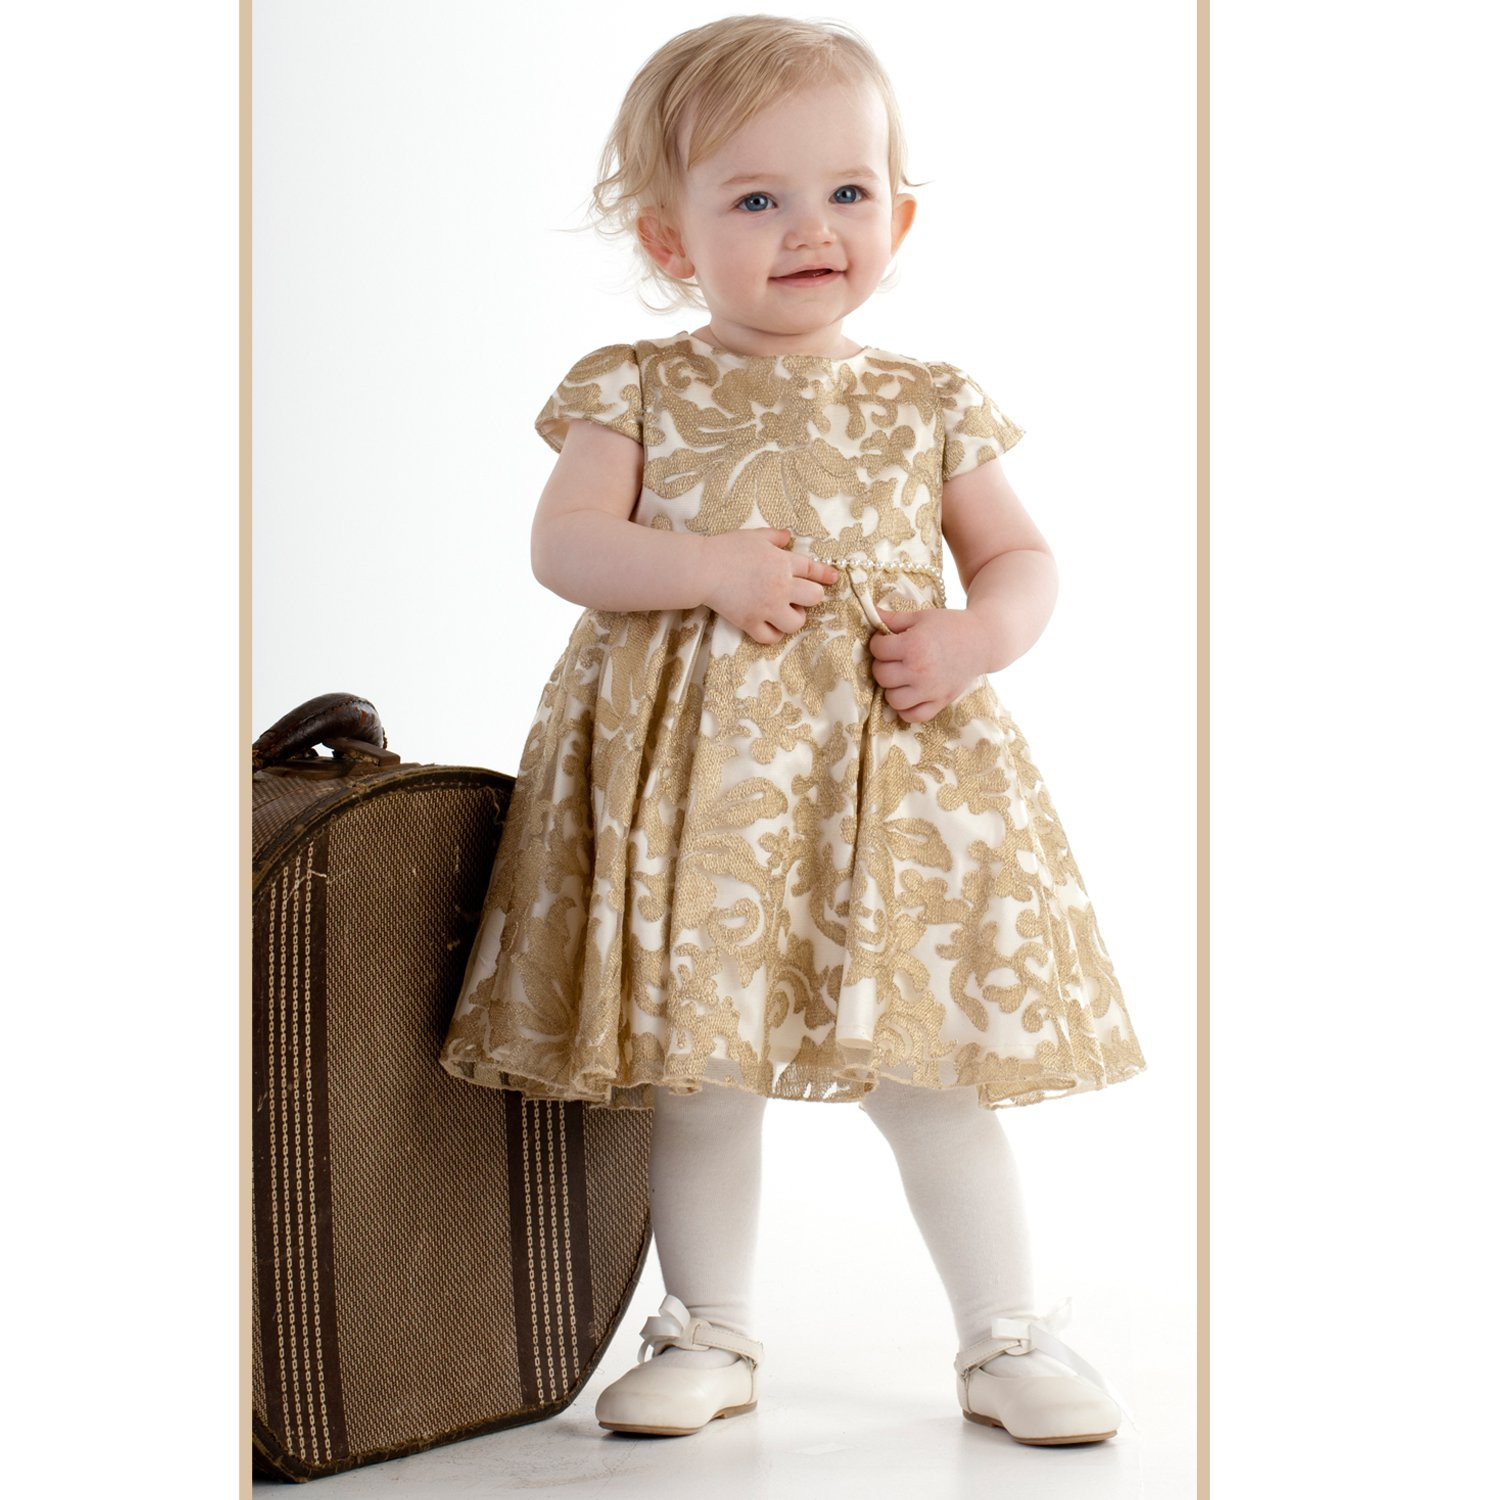 Biscotti Baby Dress
 Biscotti Royal Princess Gold Lace Baby Dress